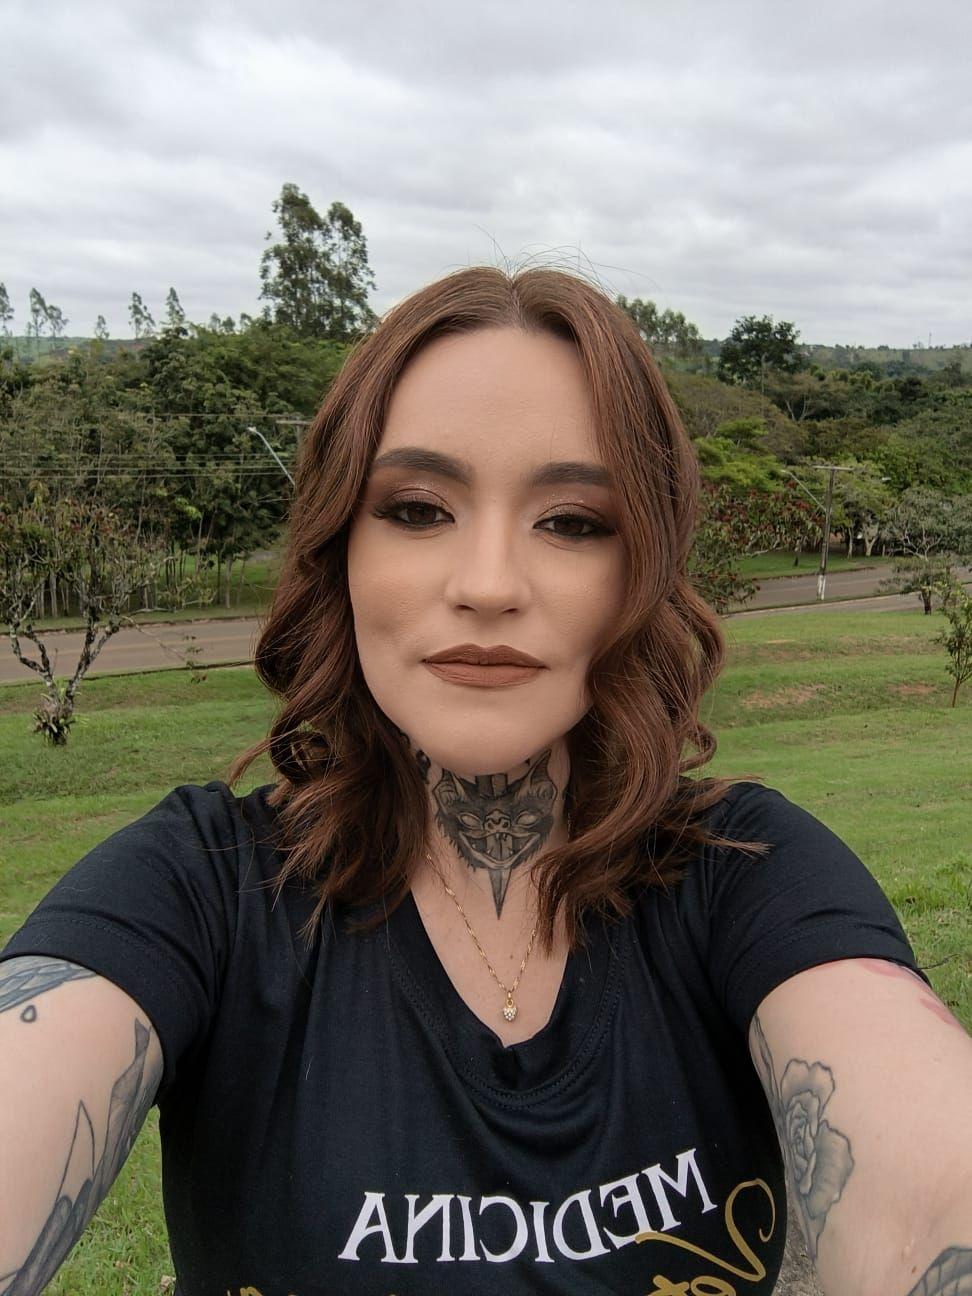 Carolina maquiada fazendo selfie em parque